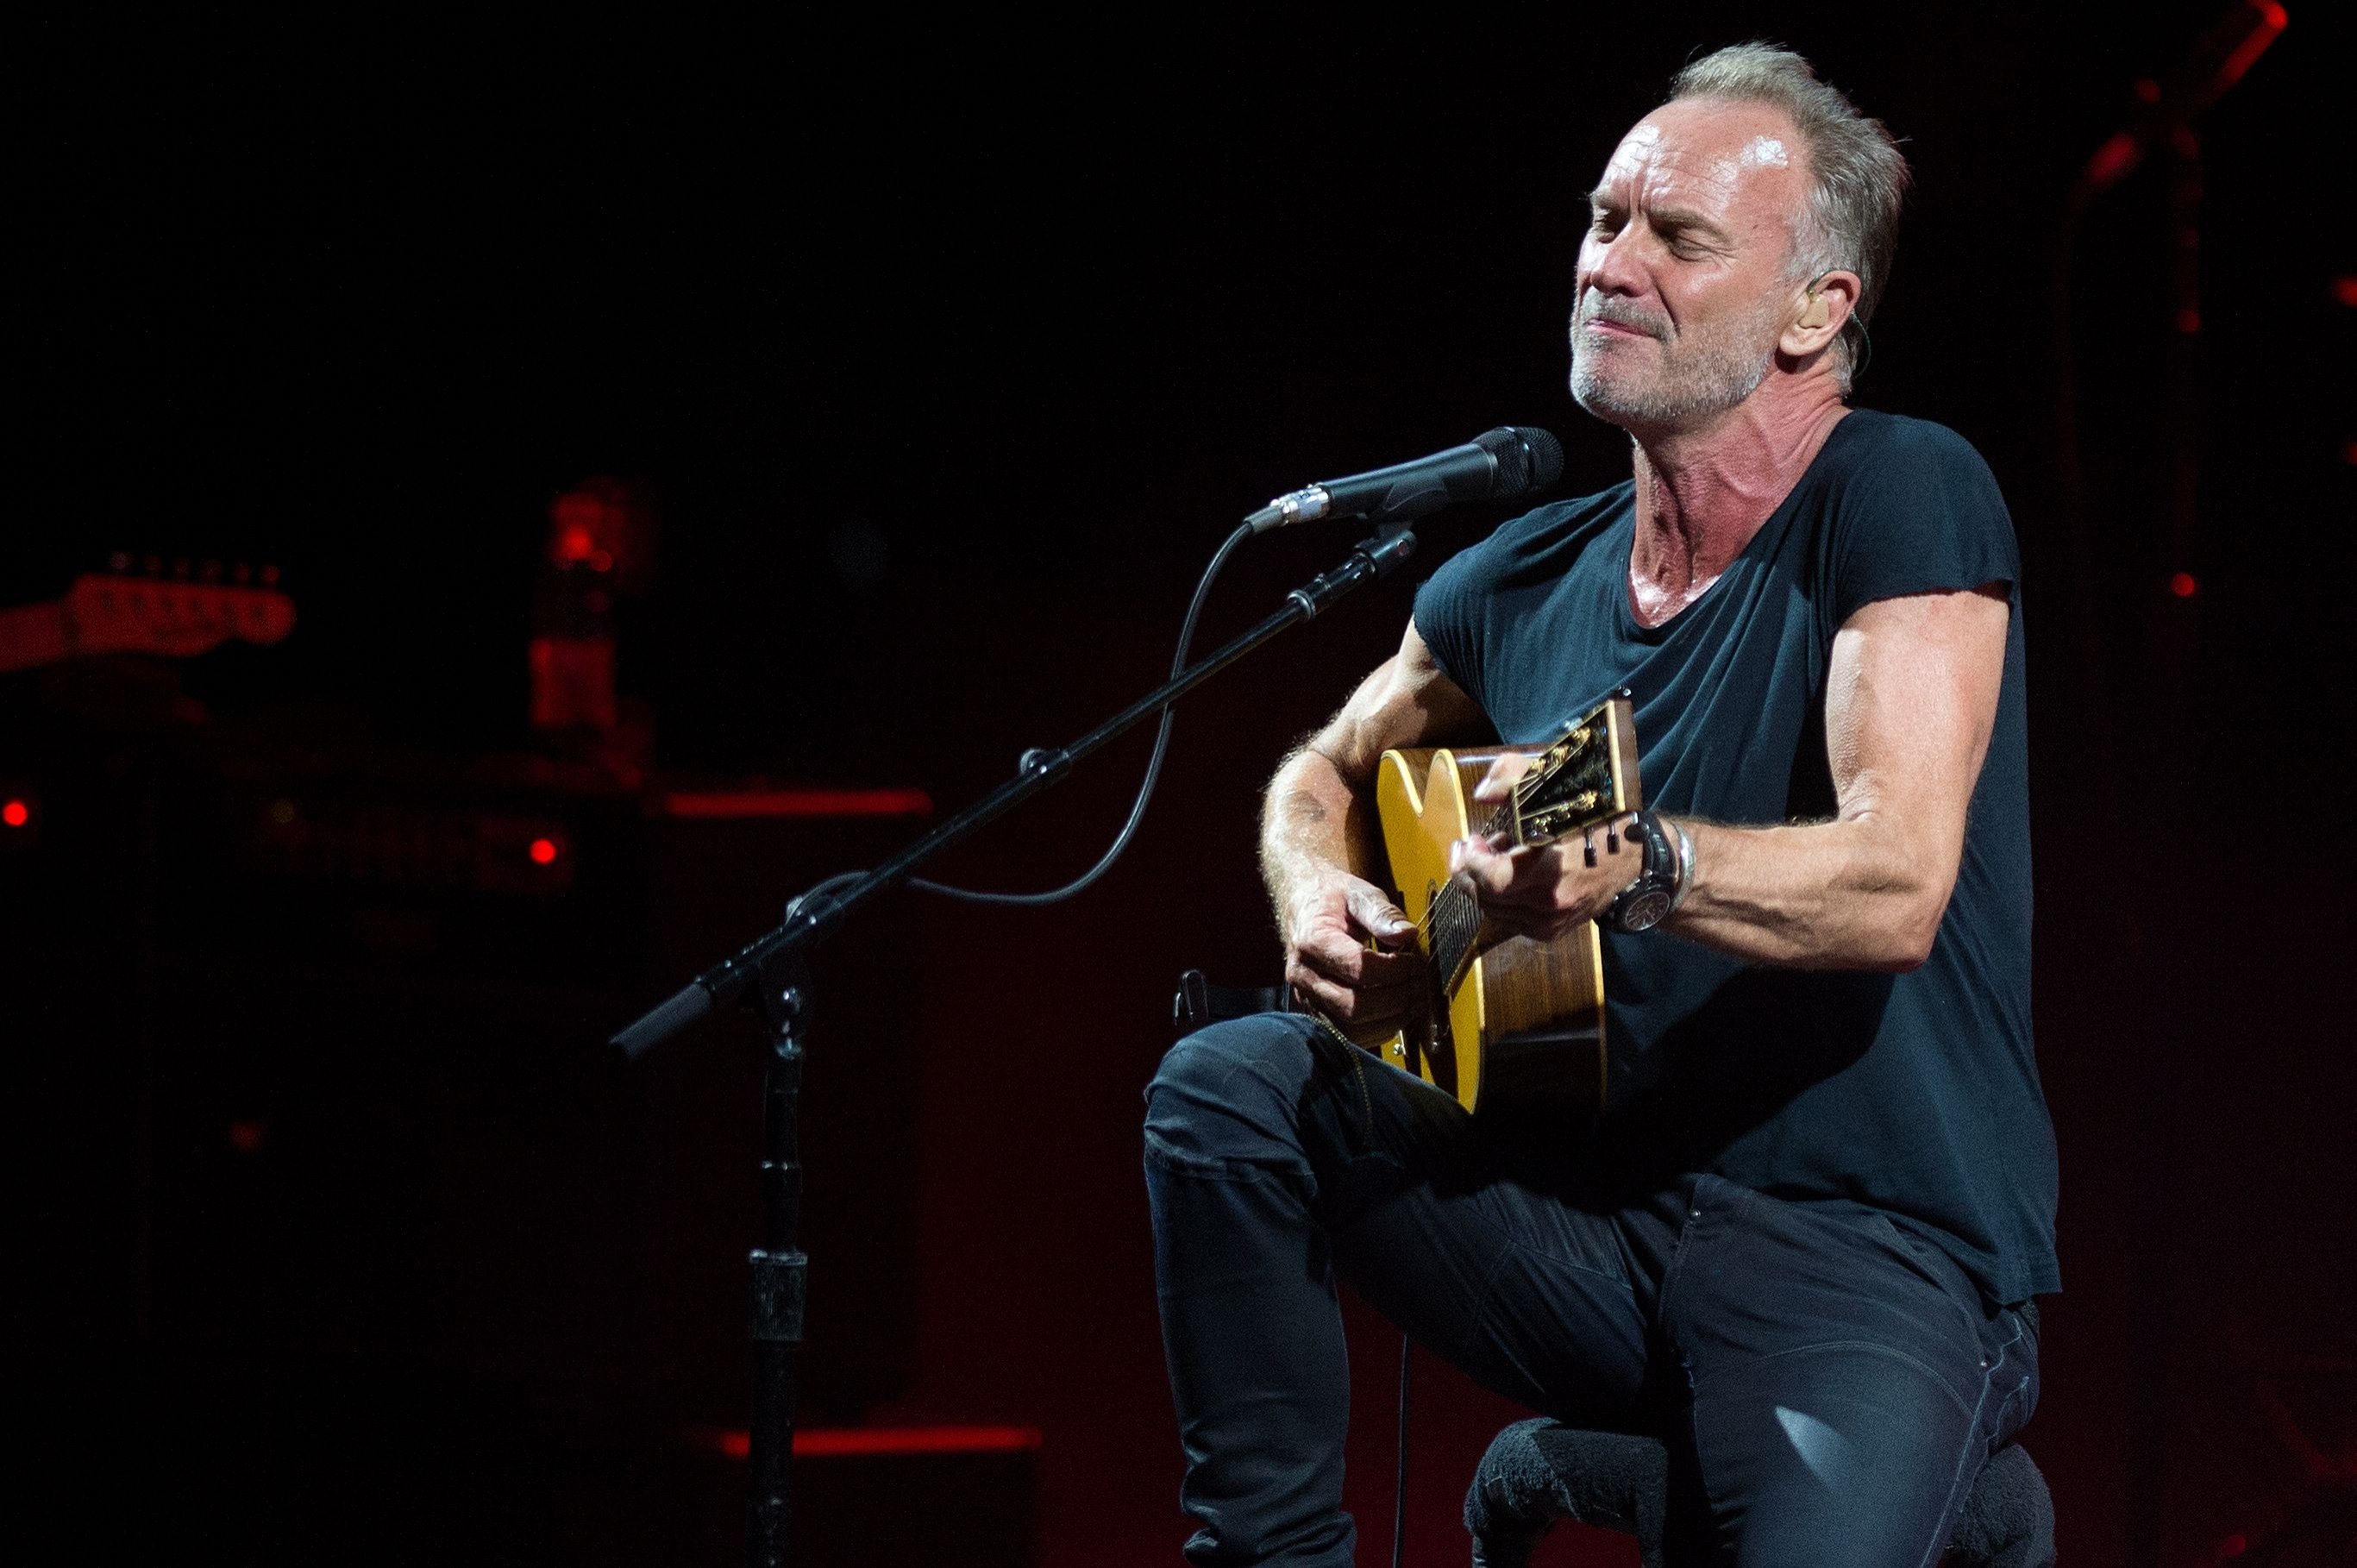 Dalam file foto ini, penyanyi Inggris Sting tampil selama konser di Festival Musik Starlite di Marbella, Spanyol, 23 Juli 2019 (AFP)